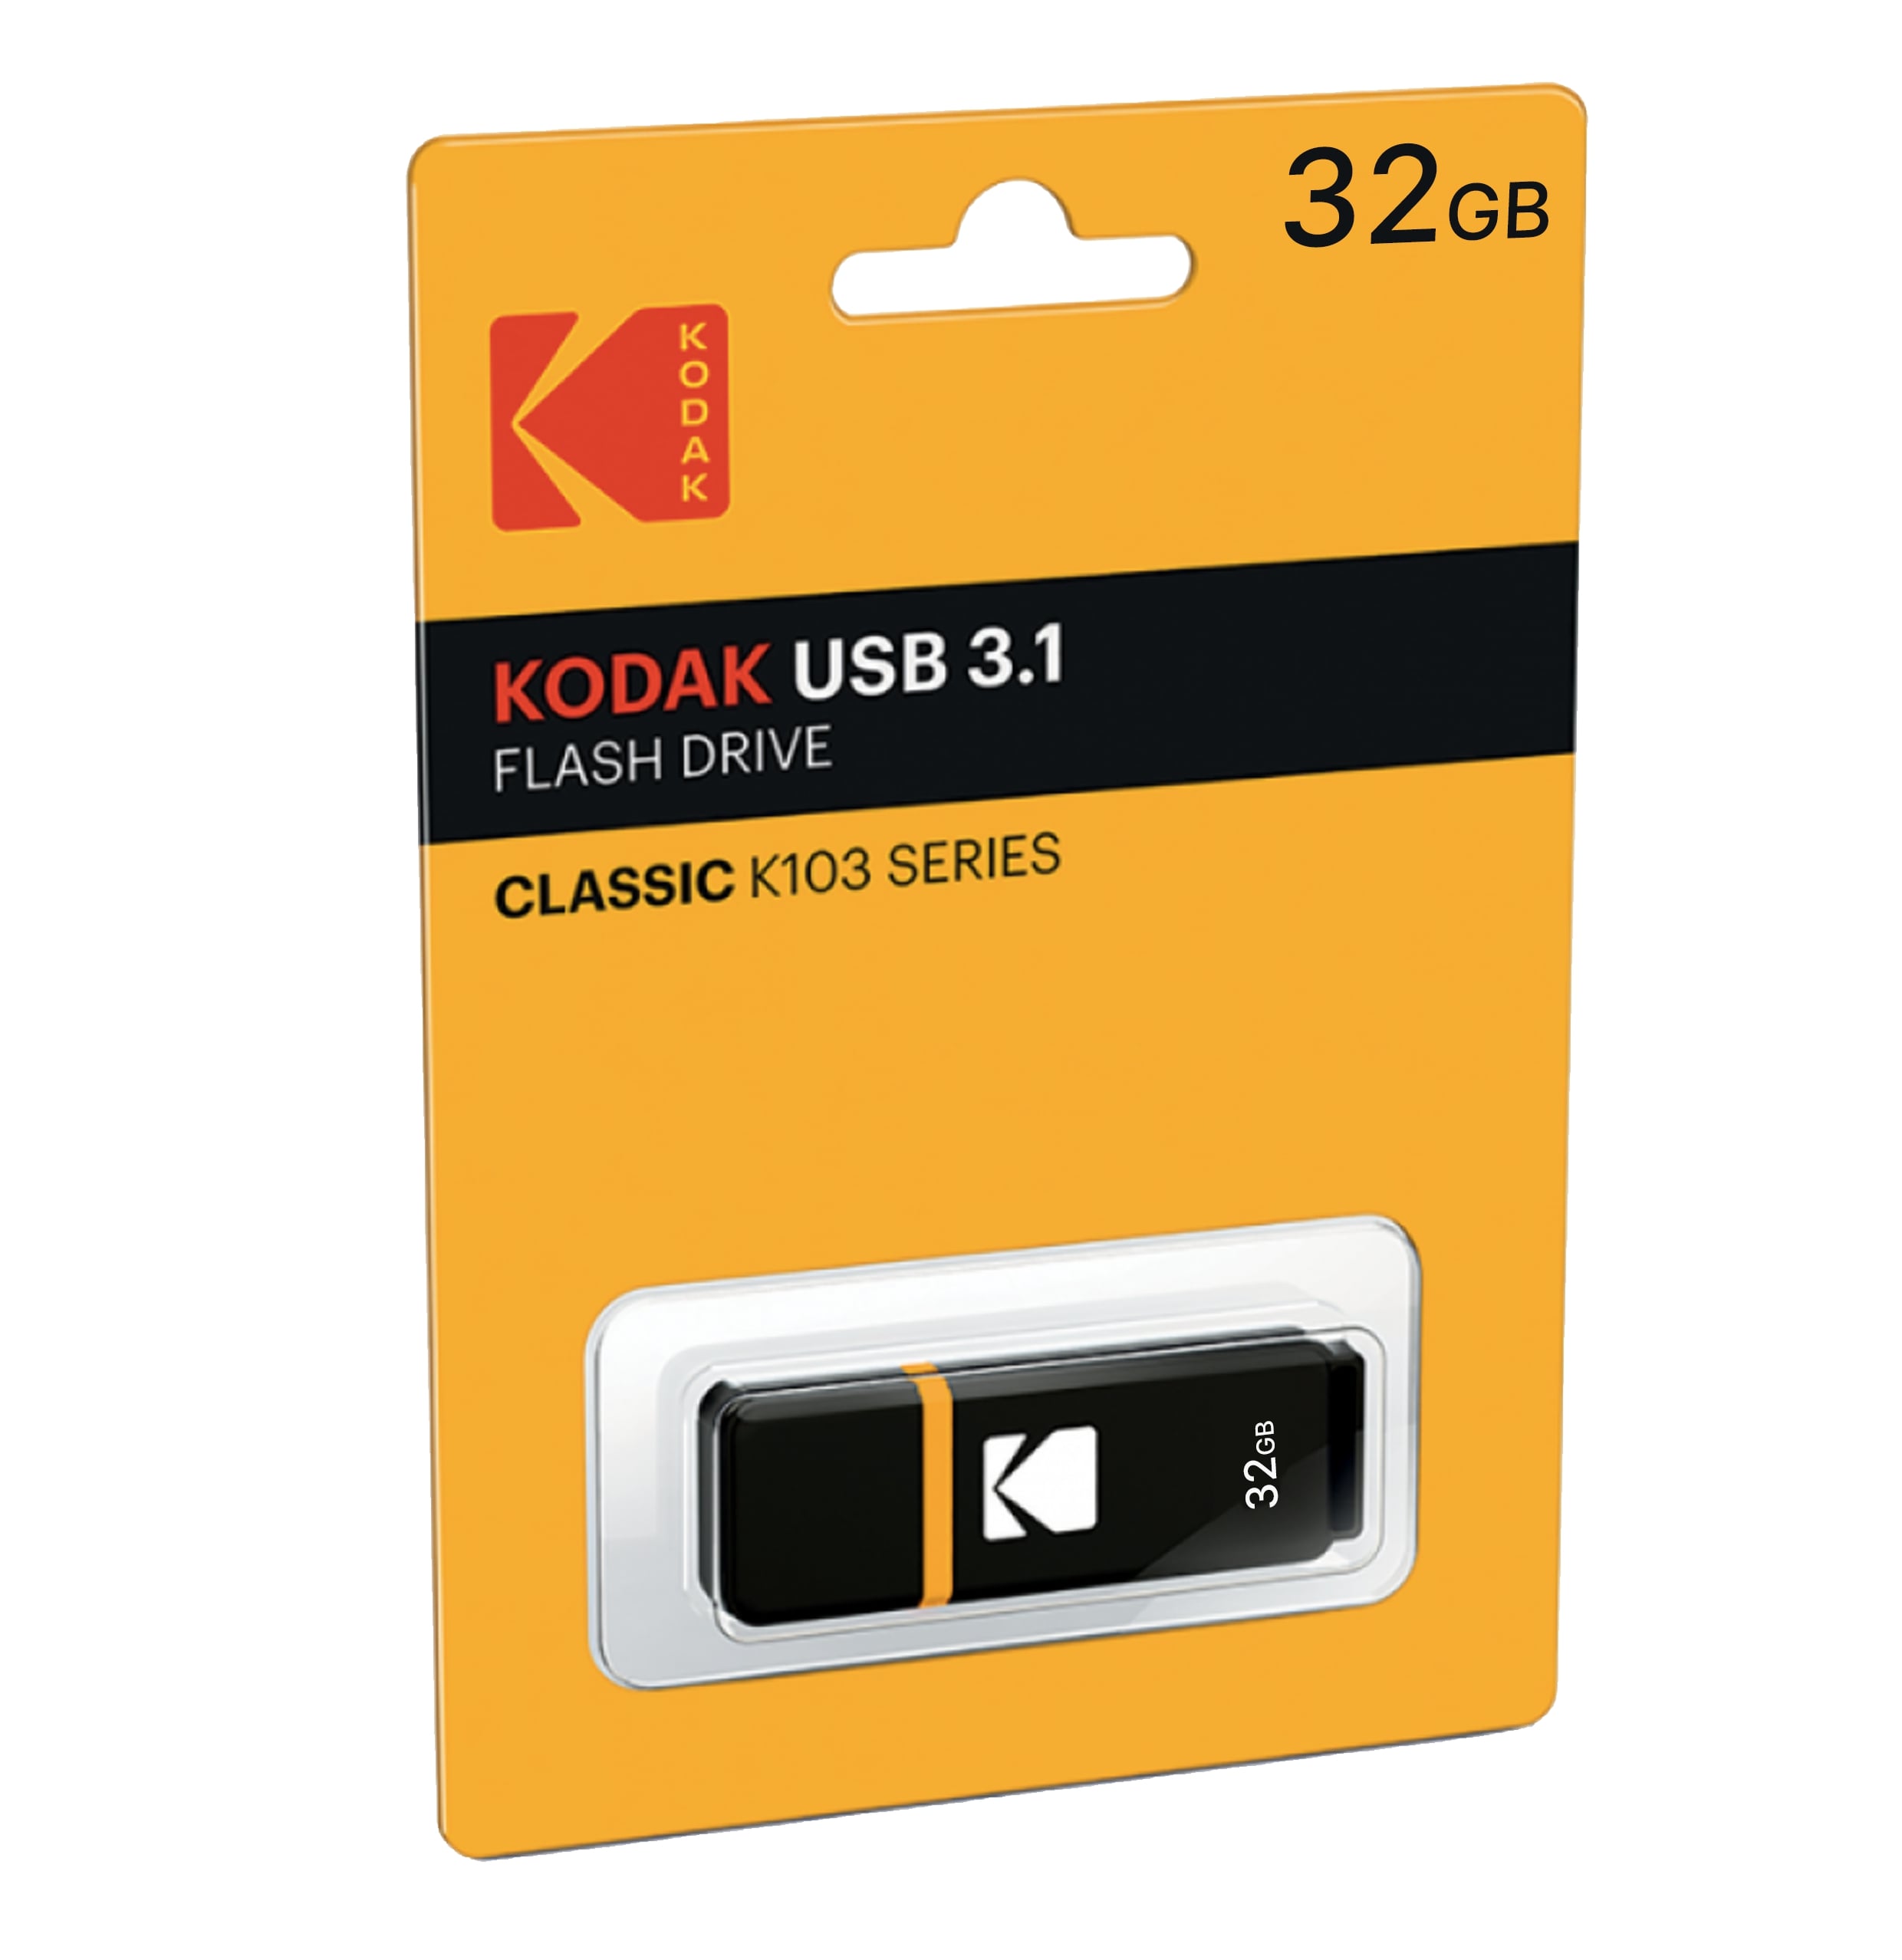 Kodak Usb 3.1 K100 32Gb Black